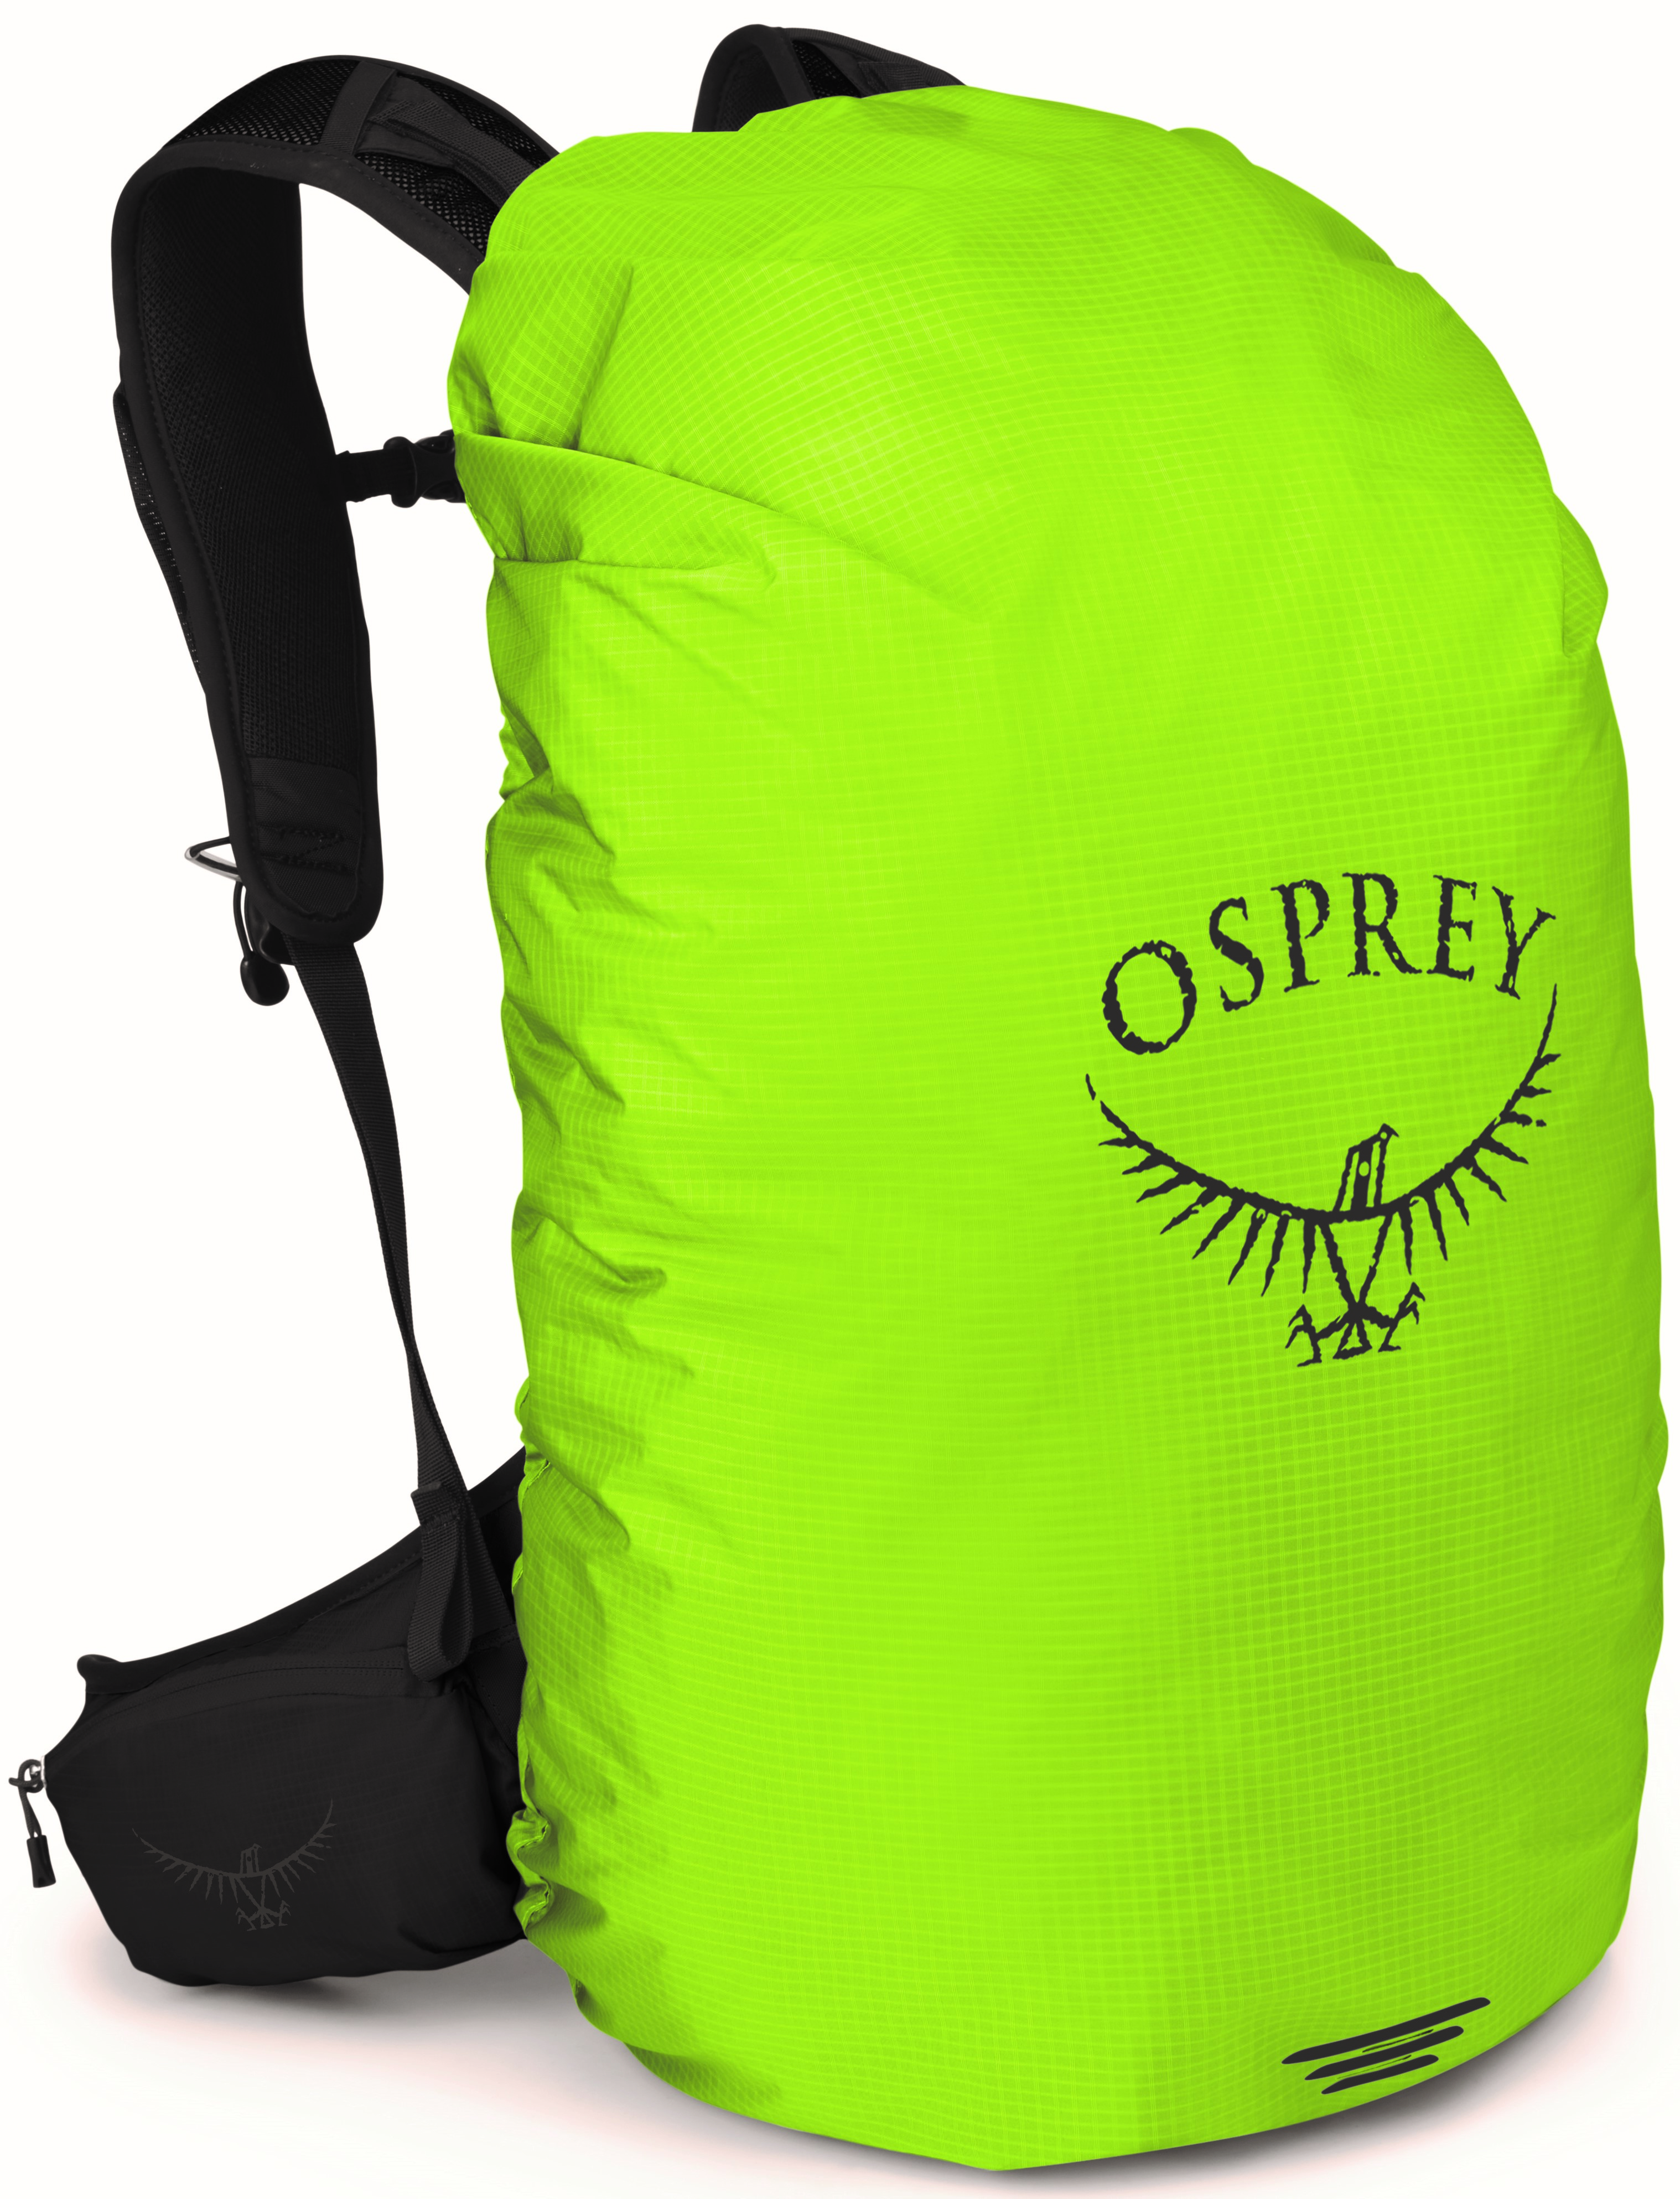 Osprey HIVIS RAINCOVER SM limon green pláštěnka na batoh